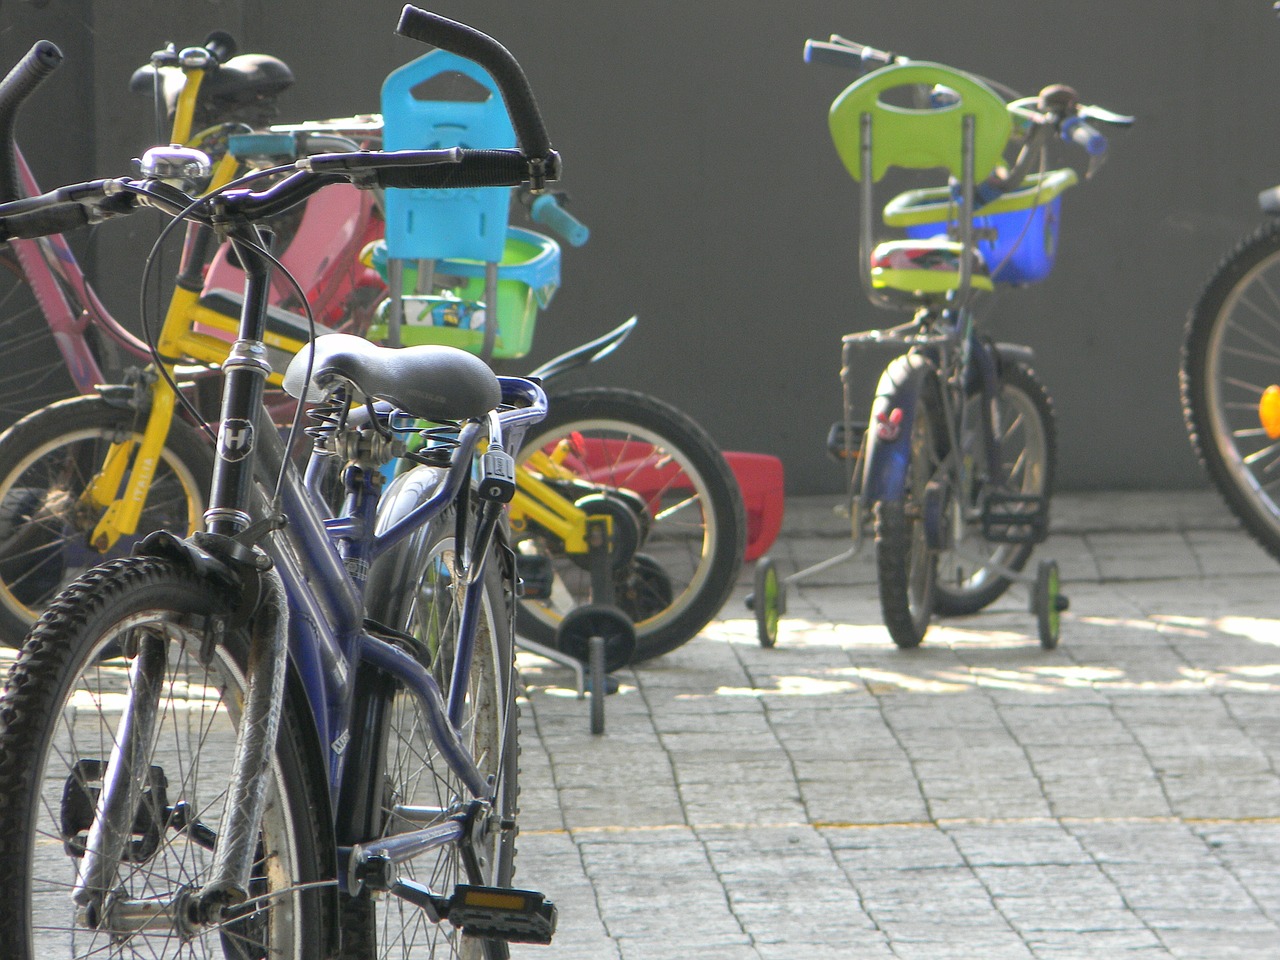 W sobotę "Rodzinne warsztaty bezpiecznej jazdy rowerem po mieście" w Lublinie - Zdjęcie główne